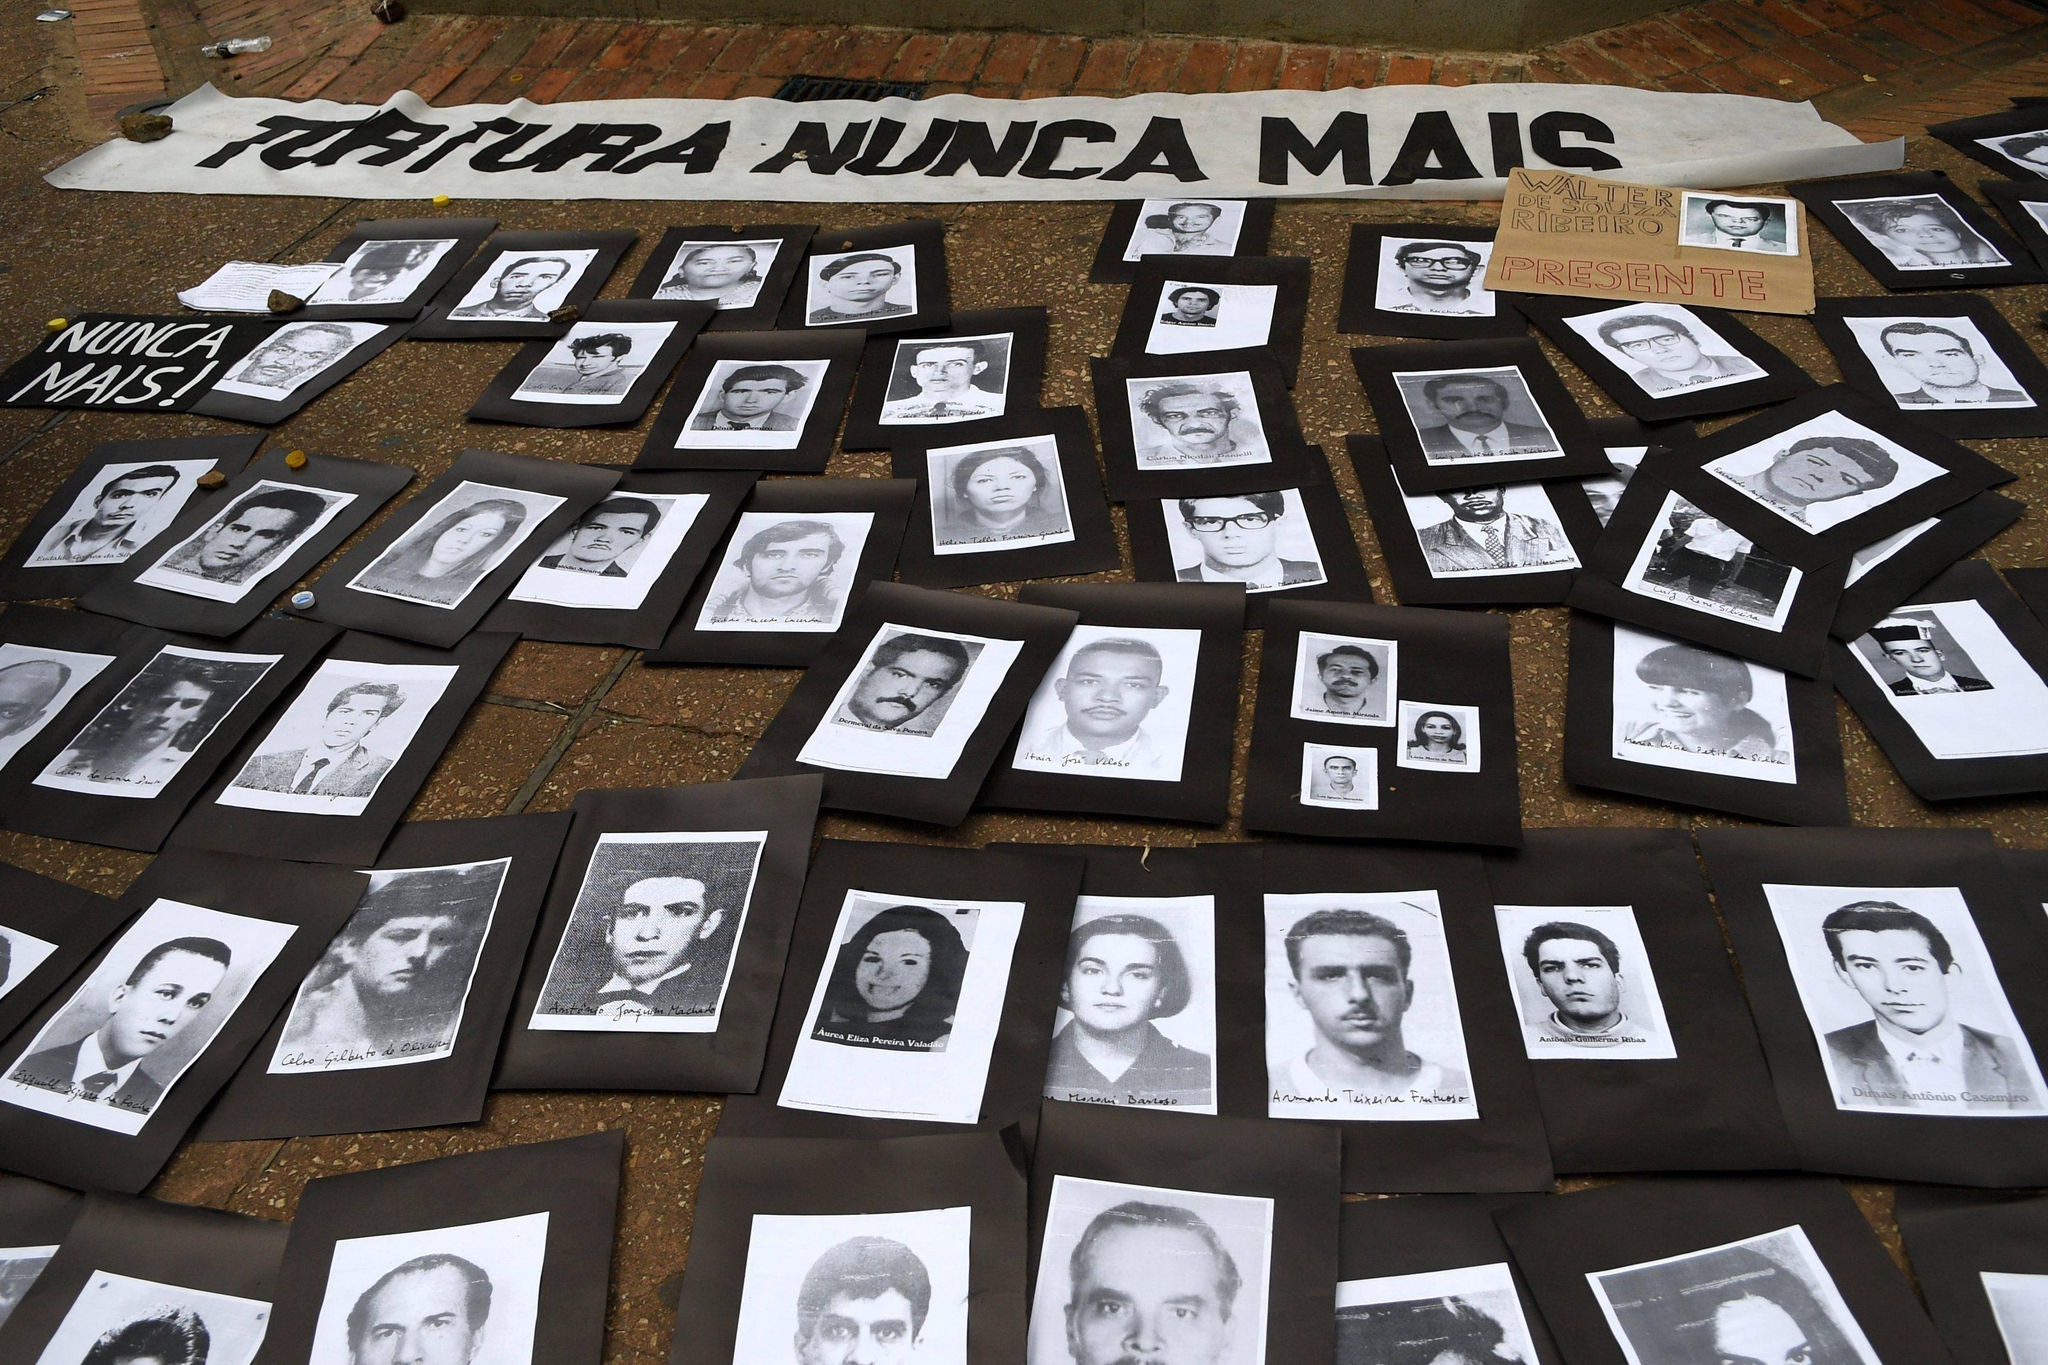 Fotos de vítimas da ditadura militar expostas em ato realizado por defensores dos direitos humanos